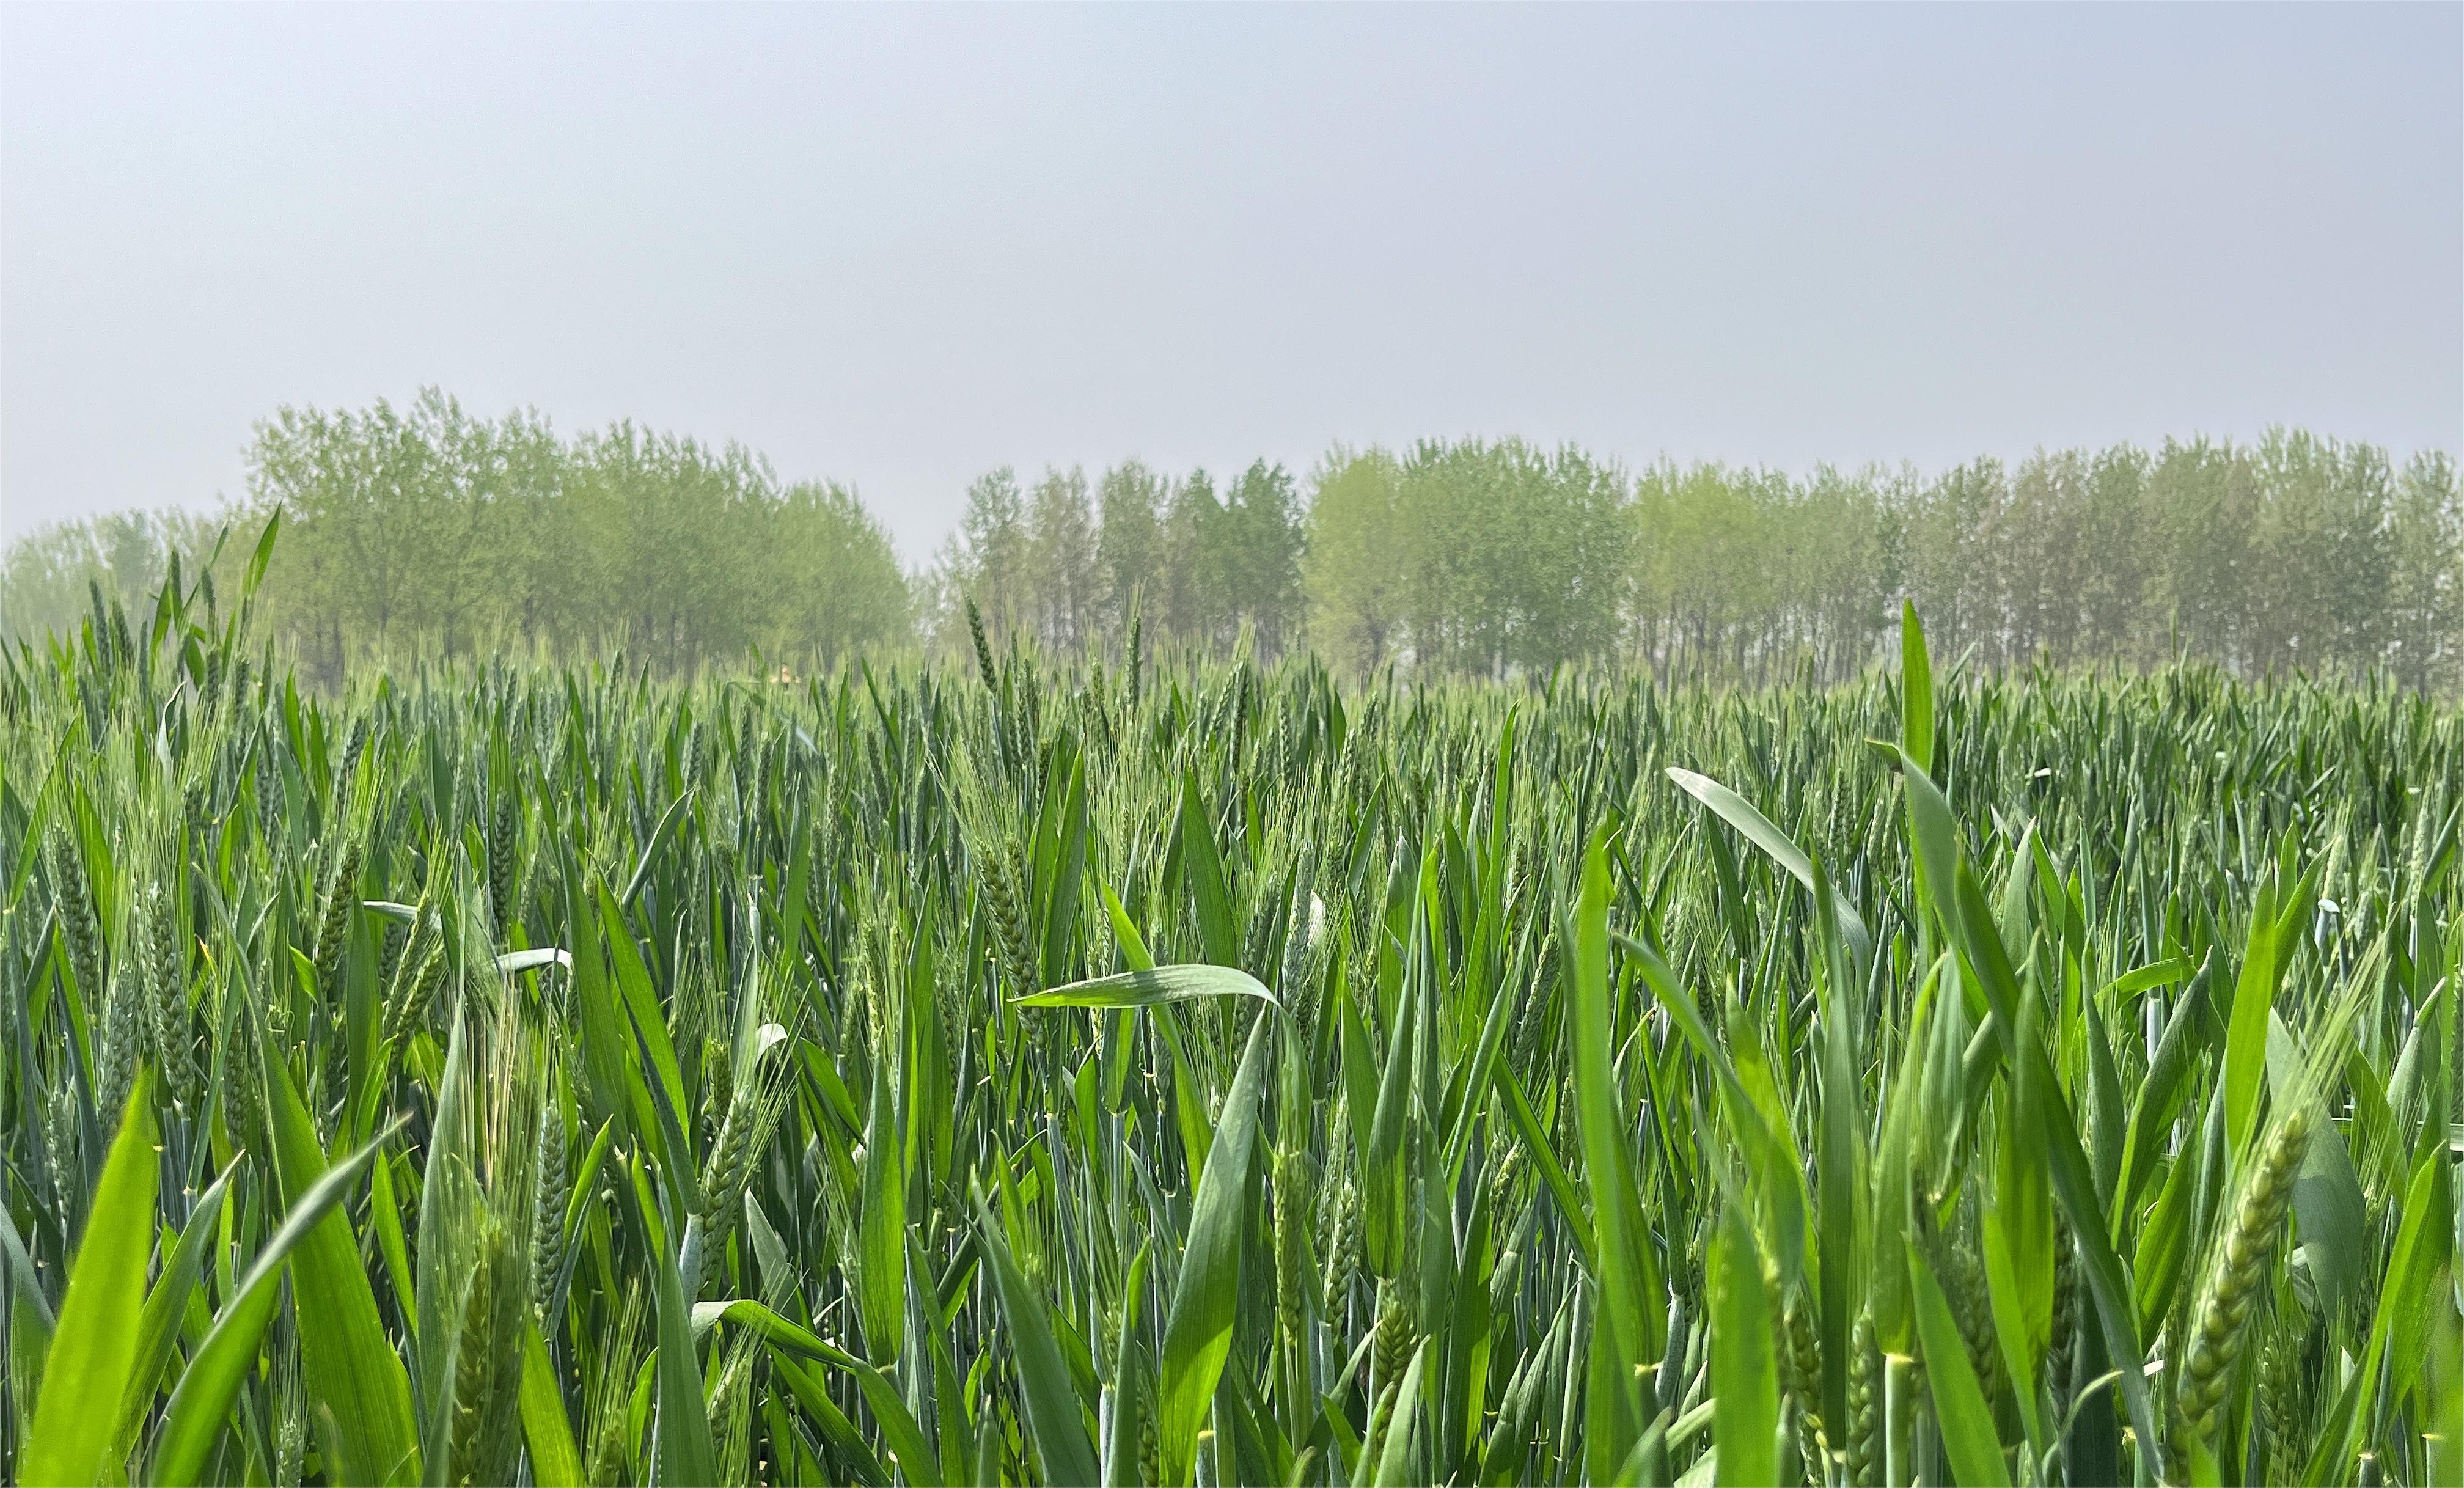 4月拔节孕穗期小麦管理技术要点,看您知道几条?